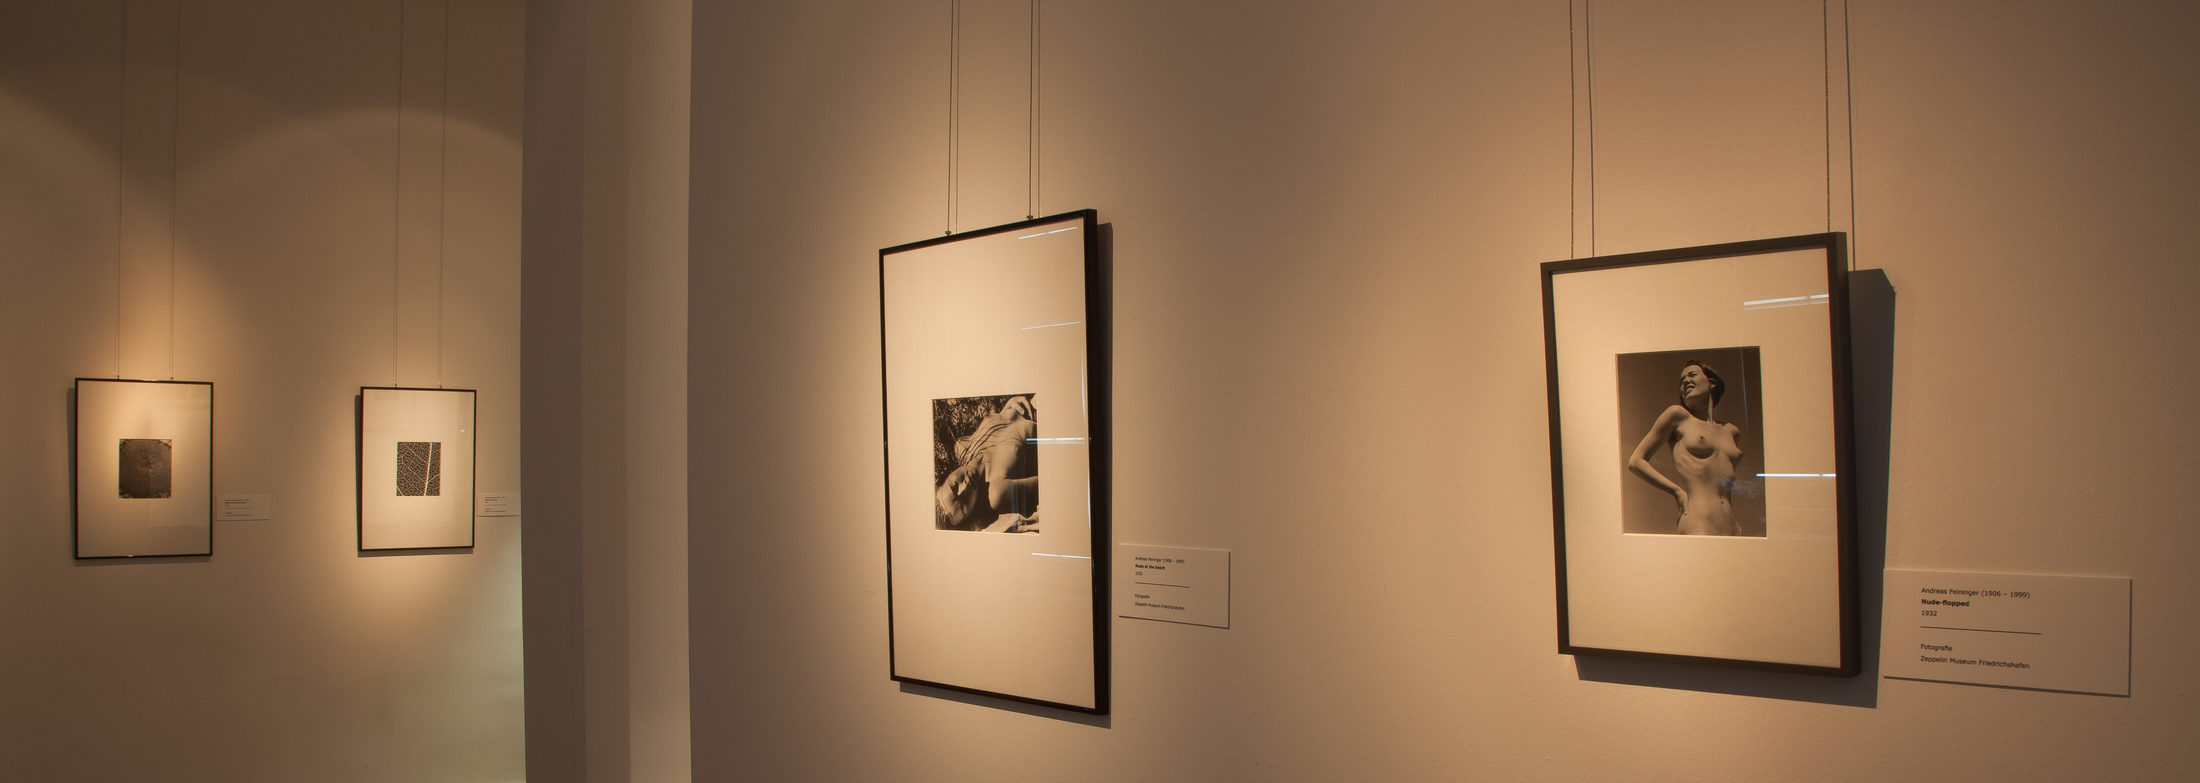 Blick in die Ausstellung zu Andreas Feininger (1) (Wird bei Klick vergrößert)